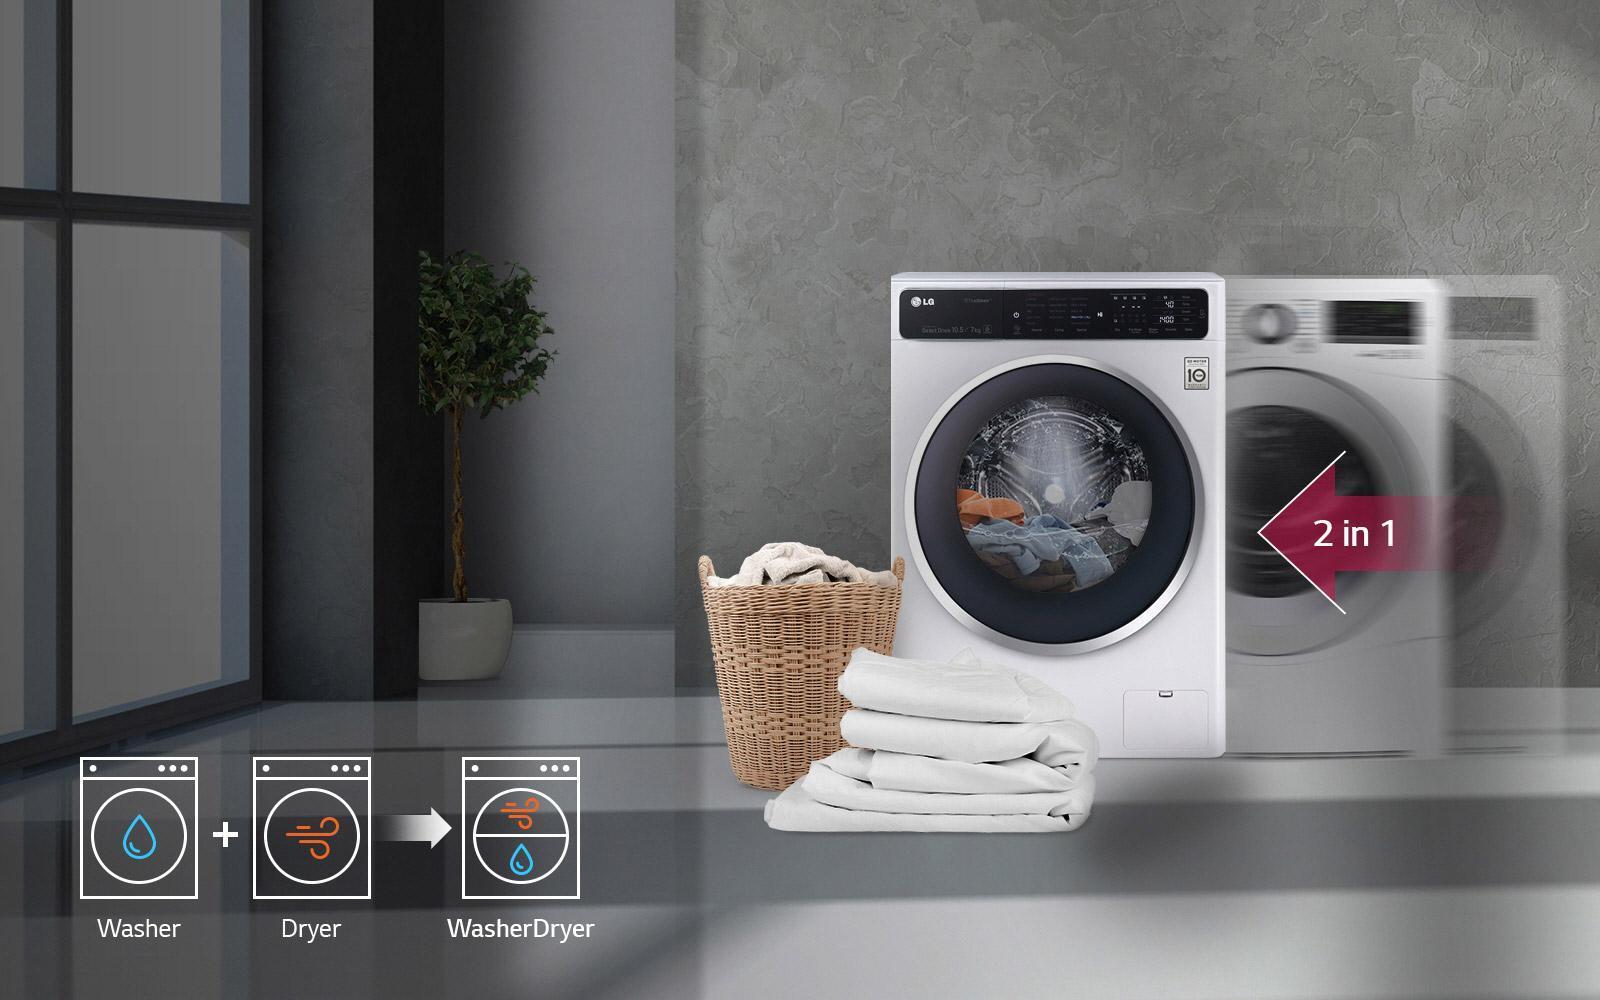 Máy giặt sấy tích hợp cả hai tính năng đó là làm sạch quần áo qua bước giặt đồng thời sấy khô quần áo